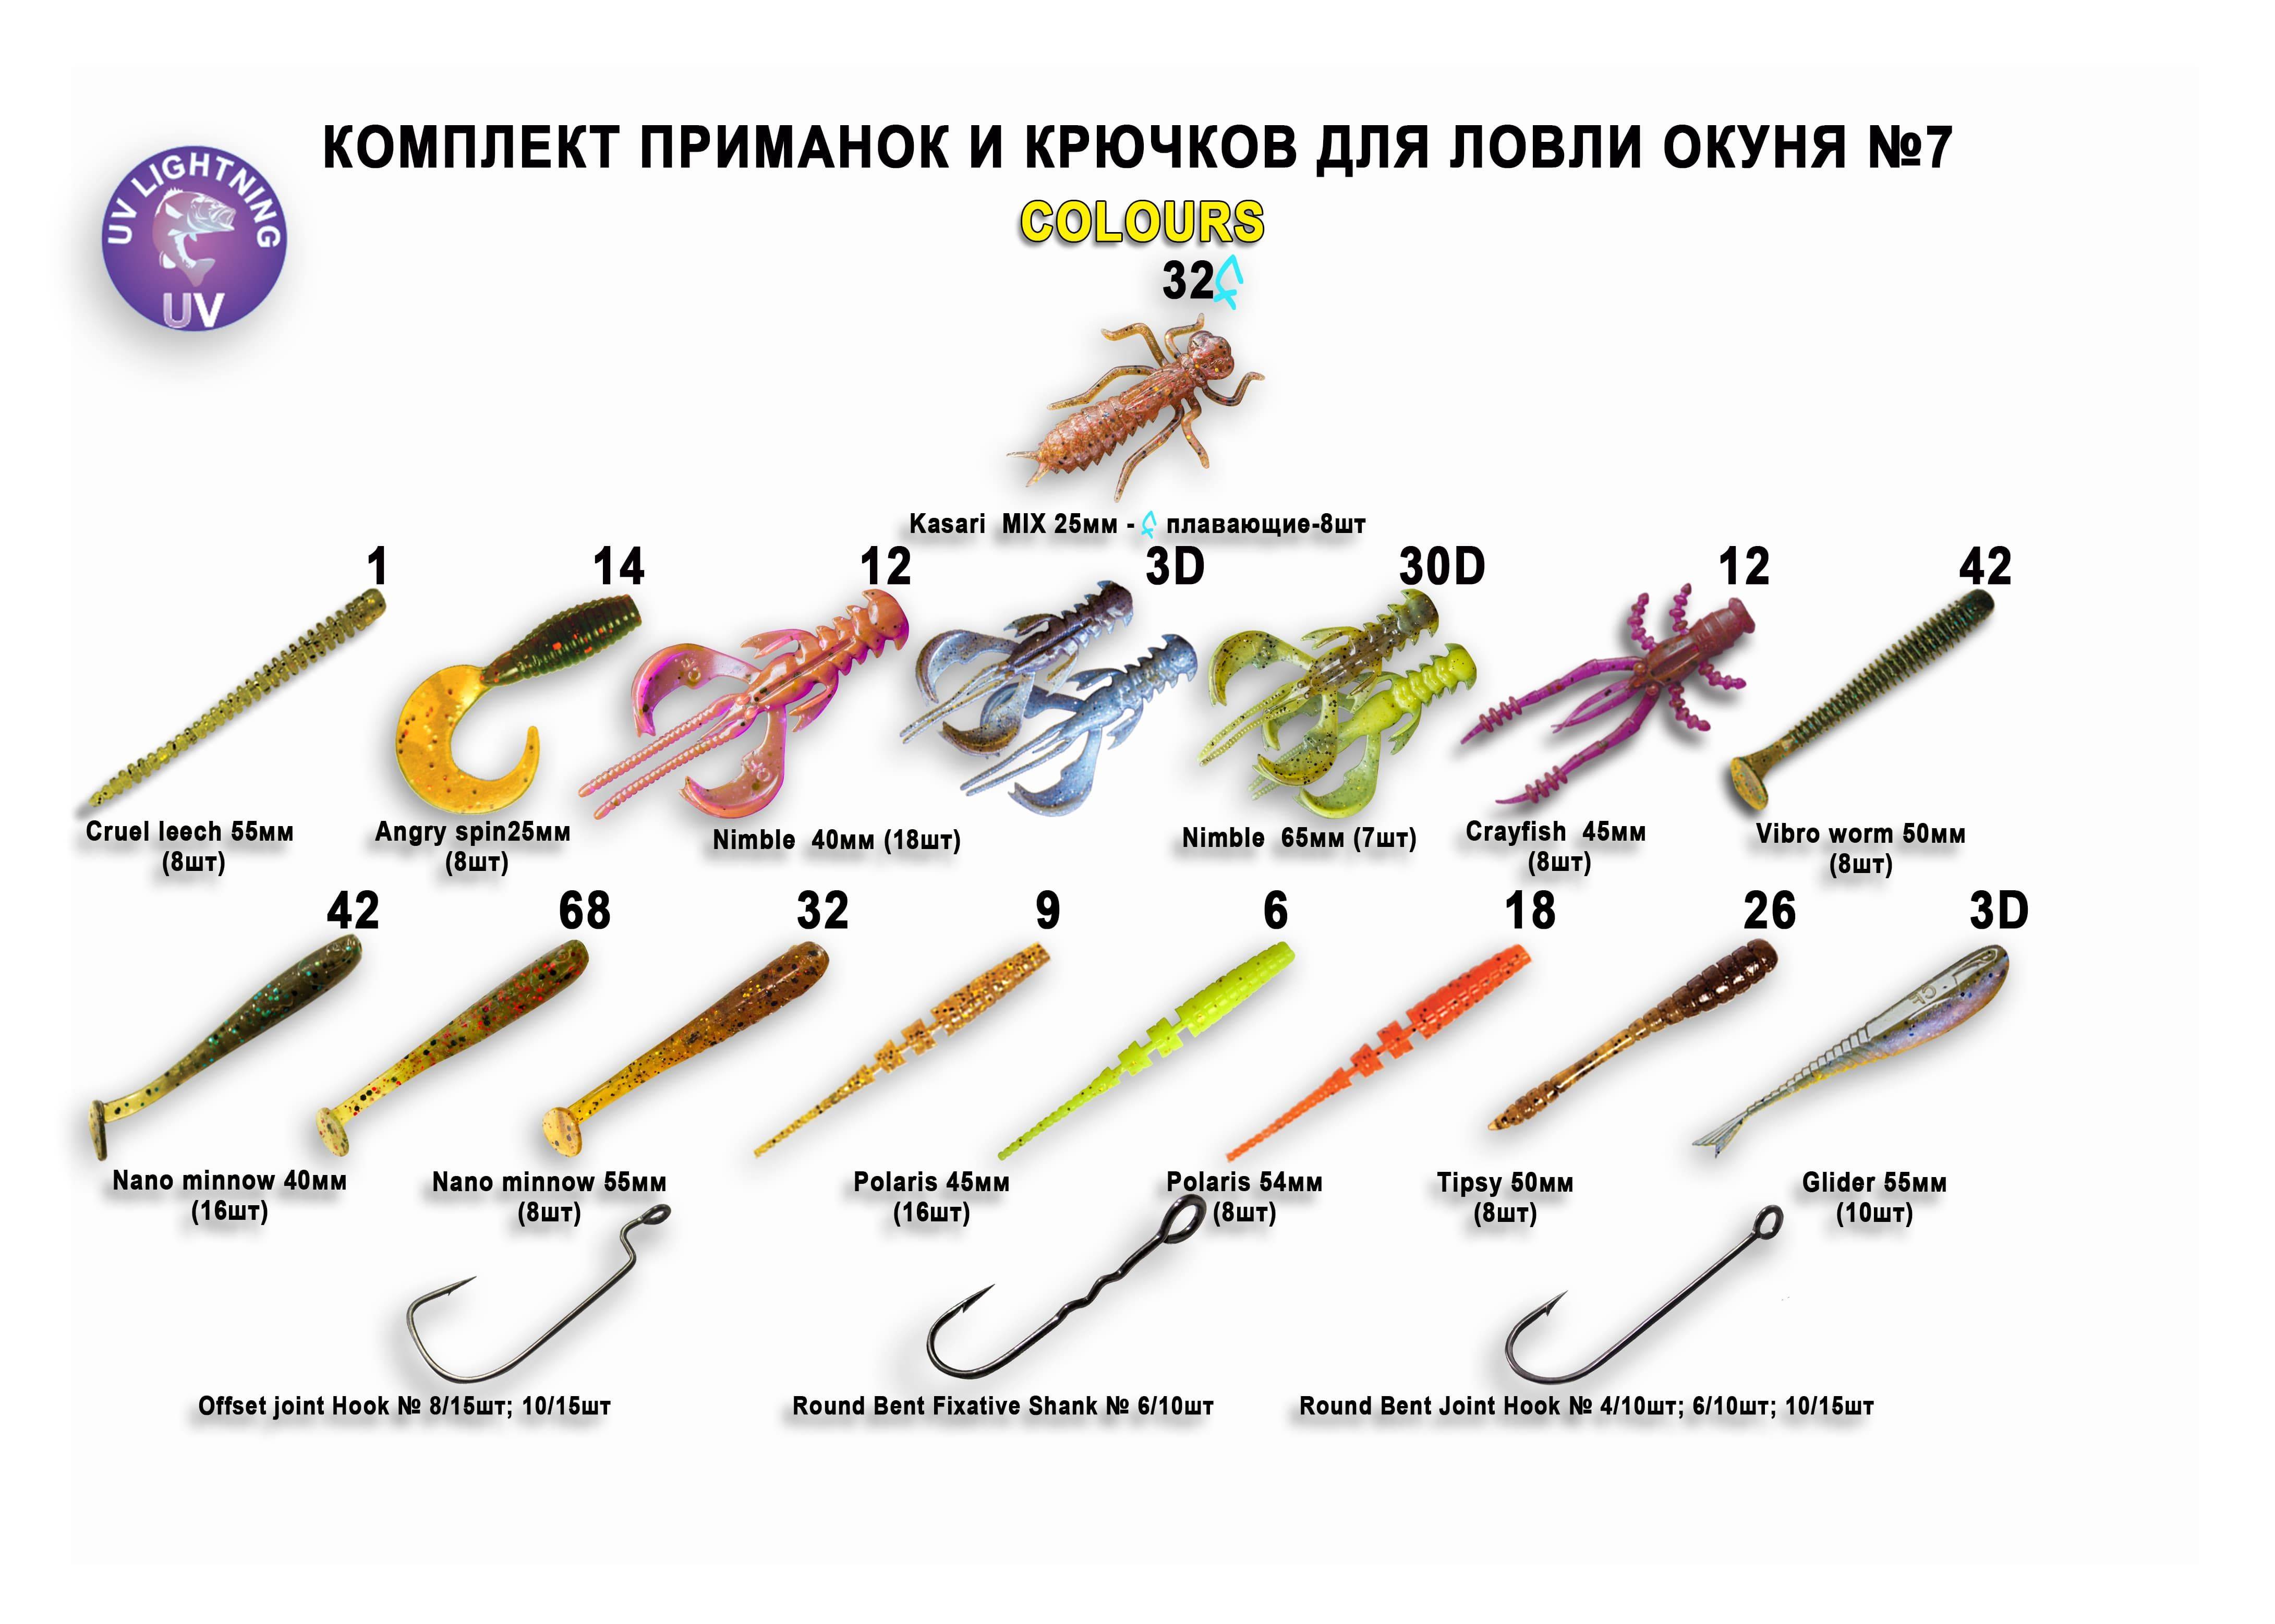 Рейтинг лучших силиконовых приманок для рыбалки на 2022 год из числа наиболее популярных на яндекс маркет